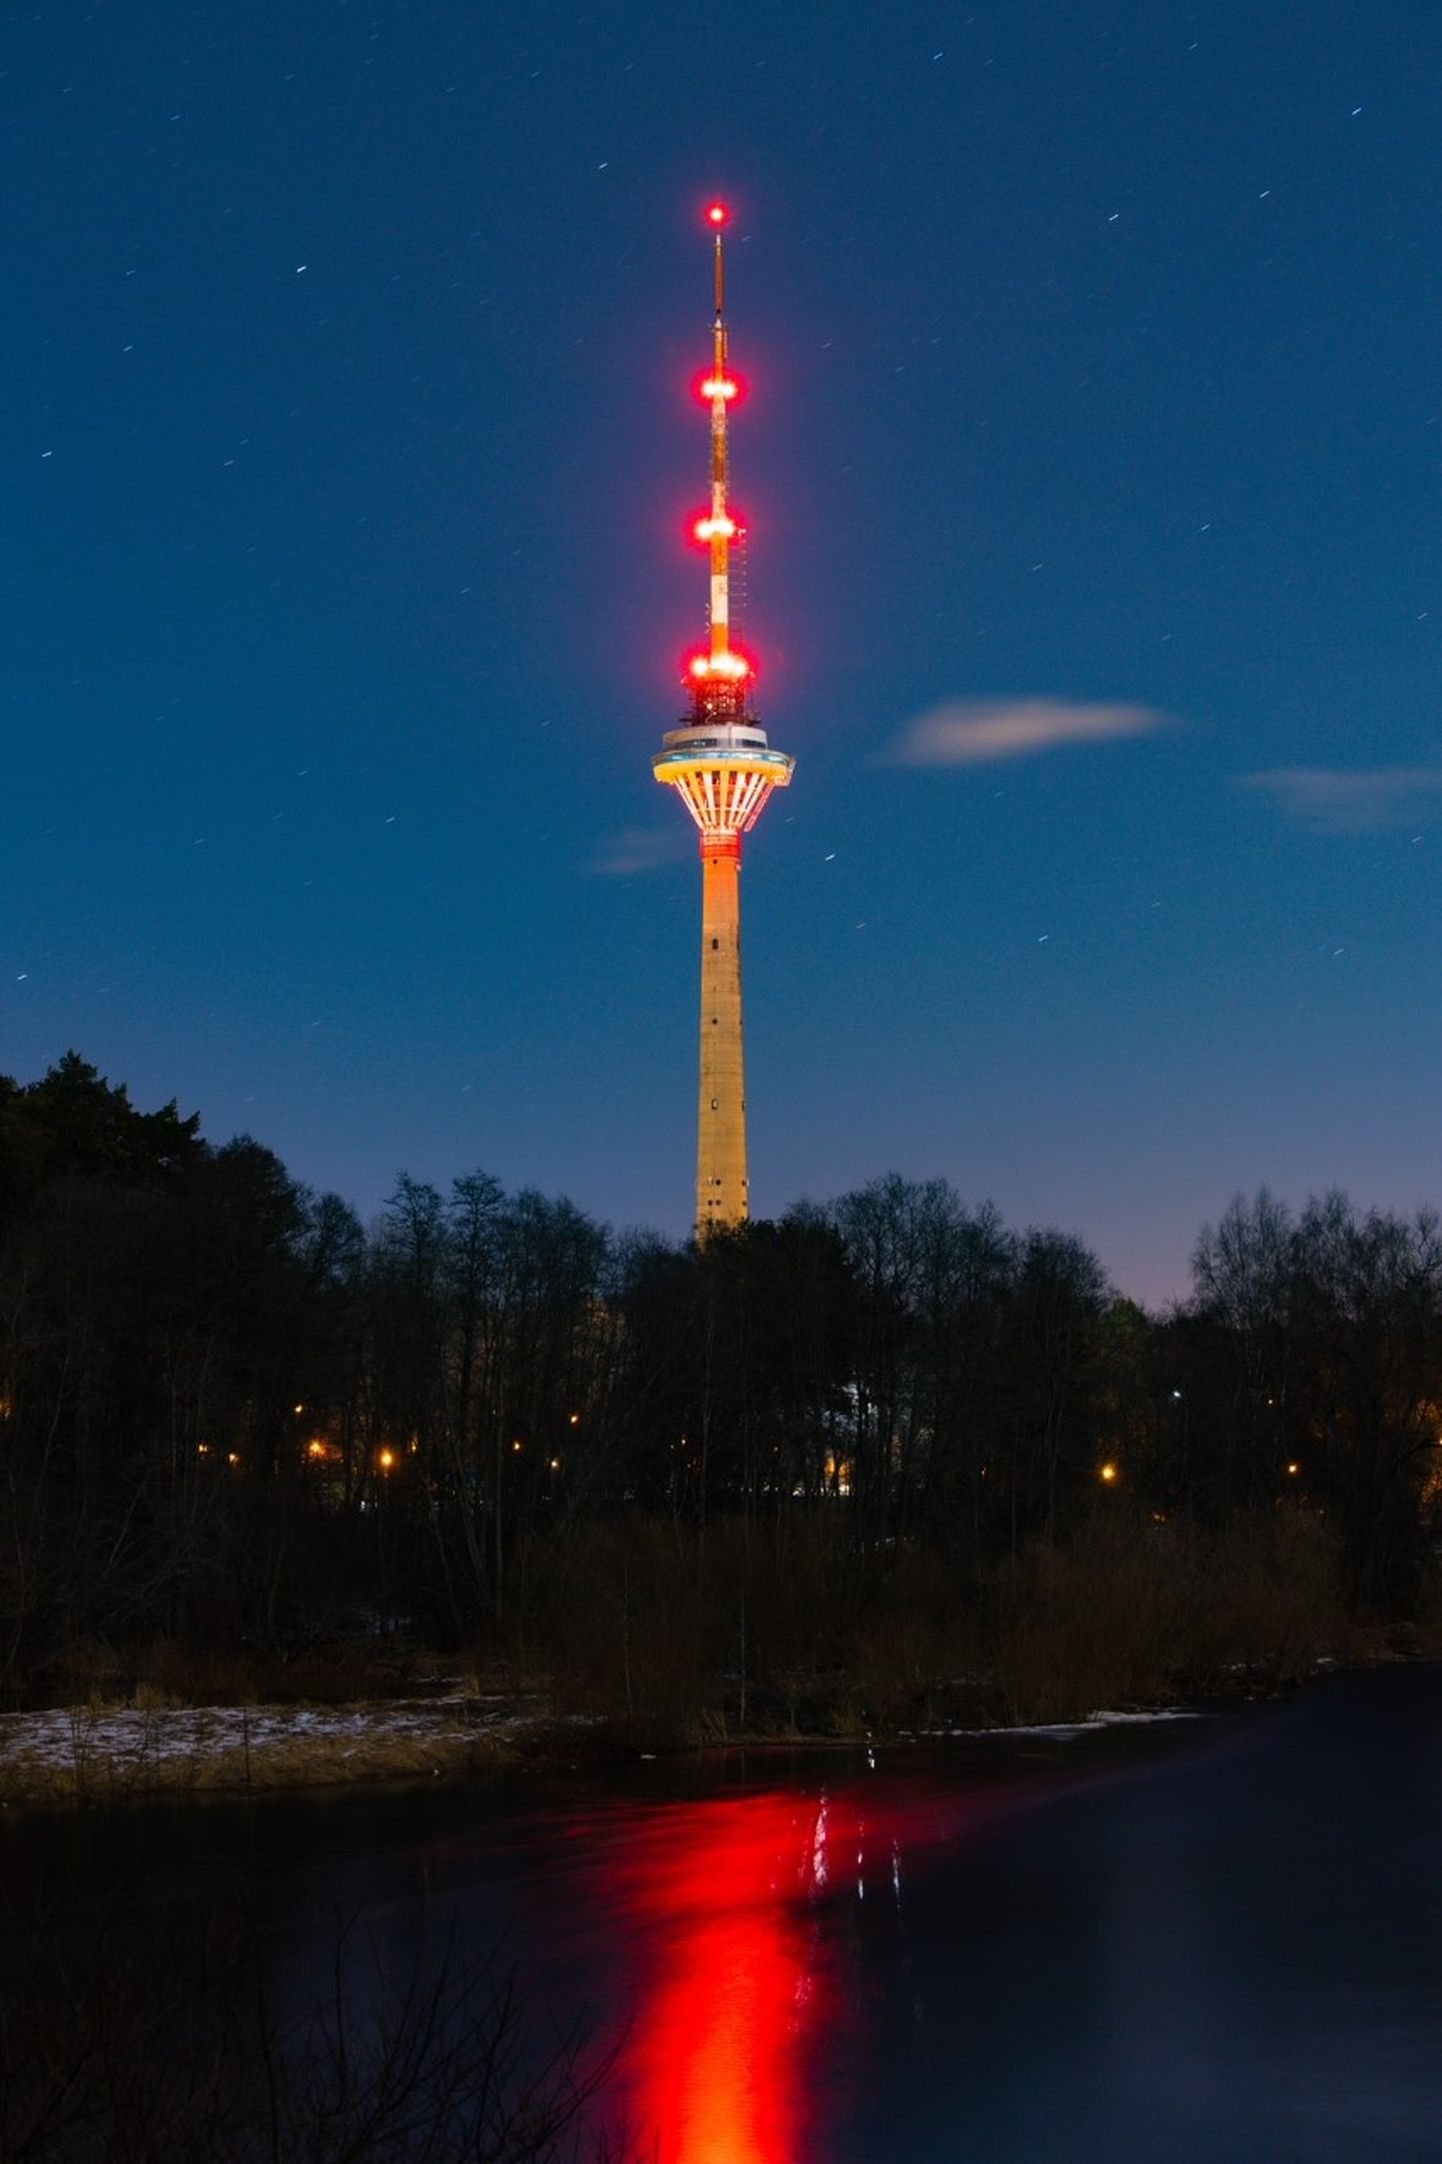 Hulgimüeloomi teadlikkuse tõstmisse annab panuse ka Tallinna Teletorn, mis on värvunud 29.-31. märtsini punastesse toonidesse.